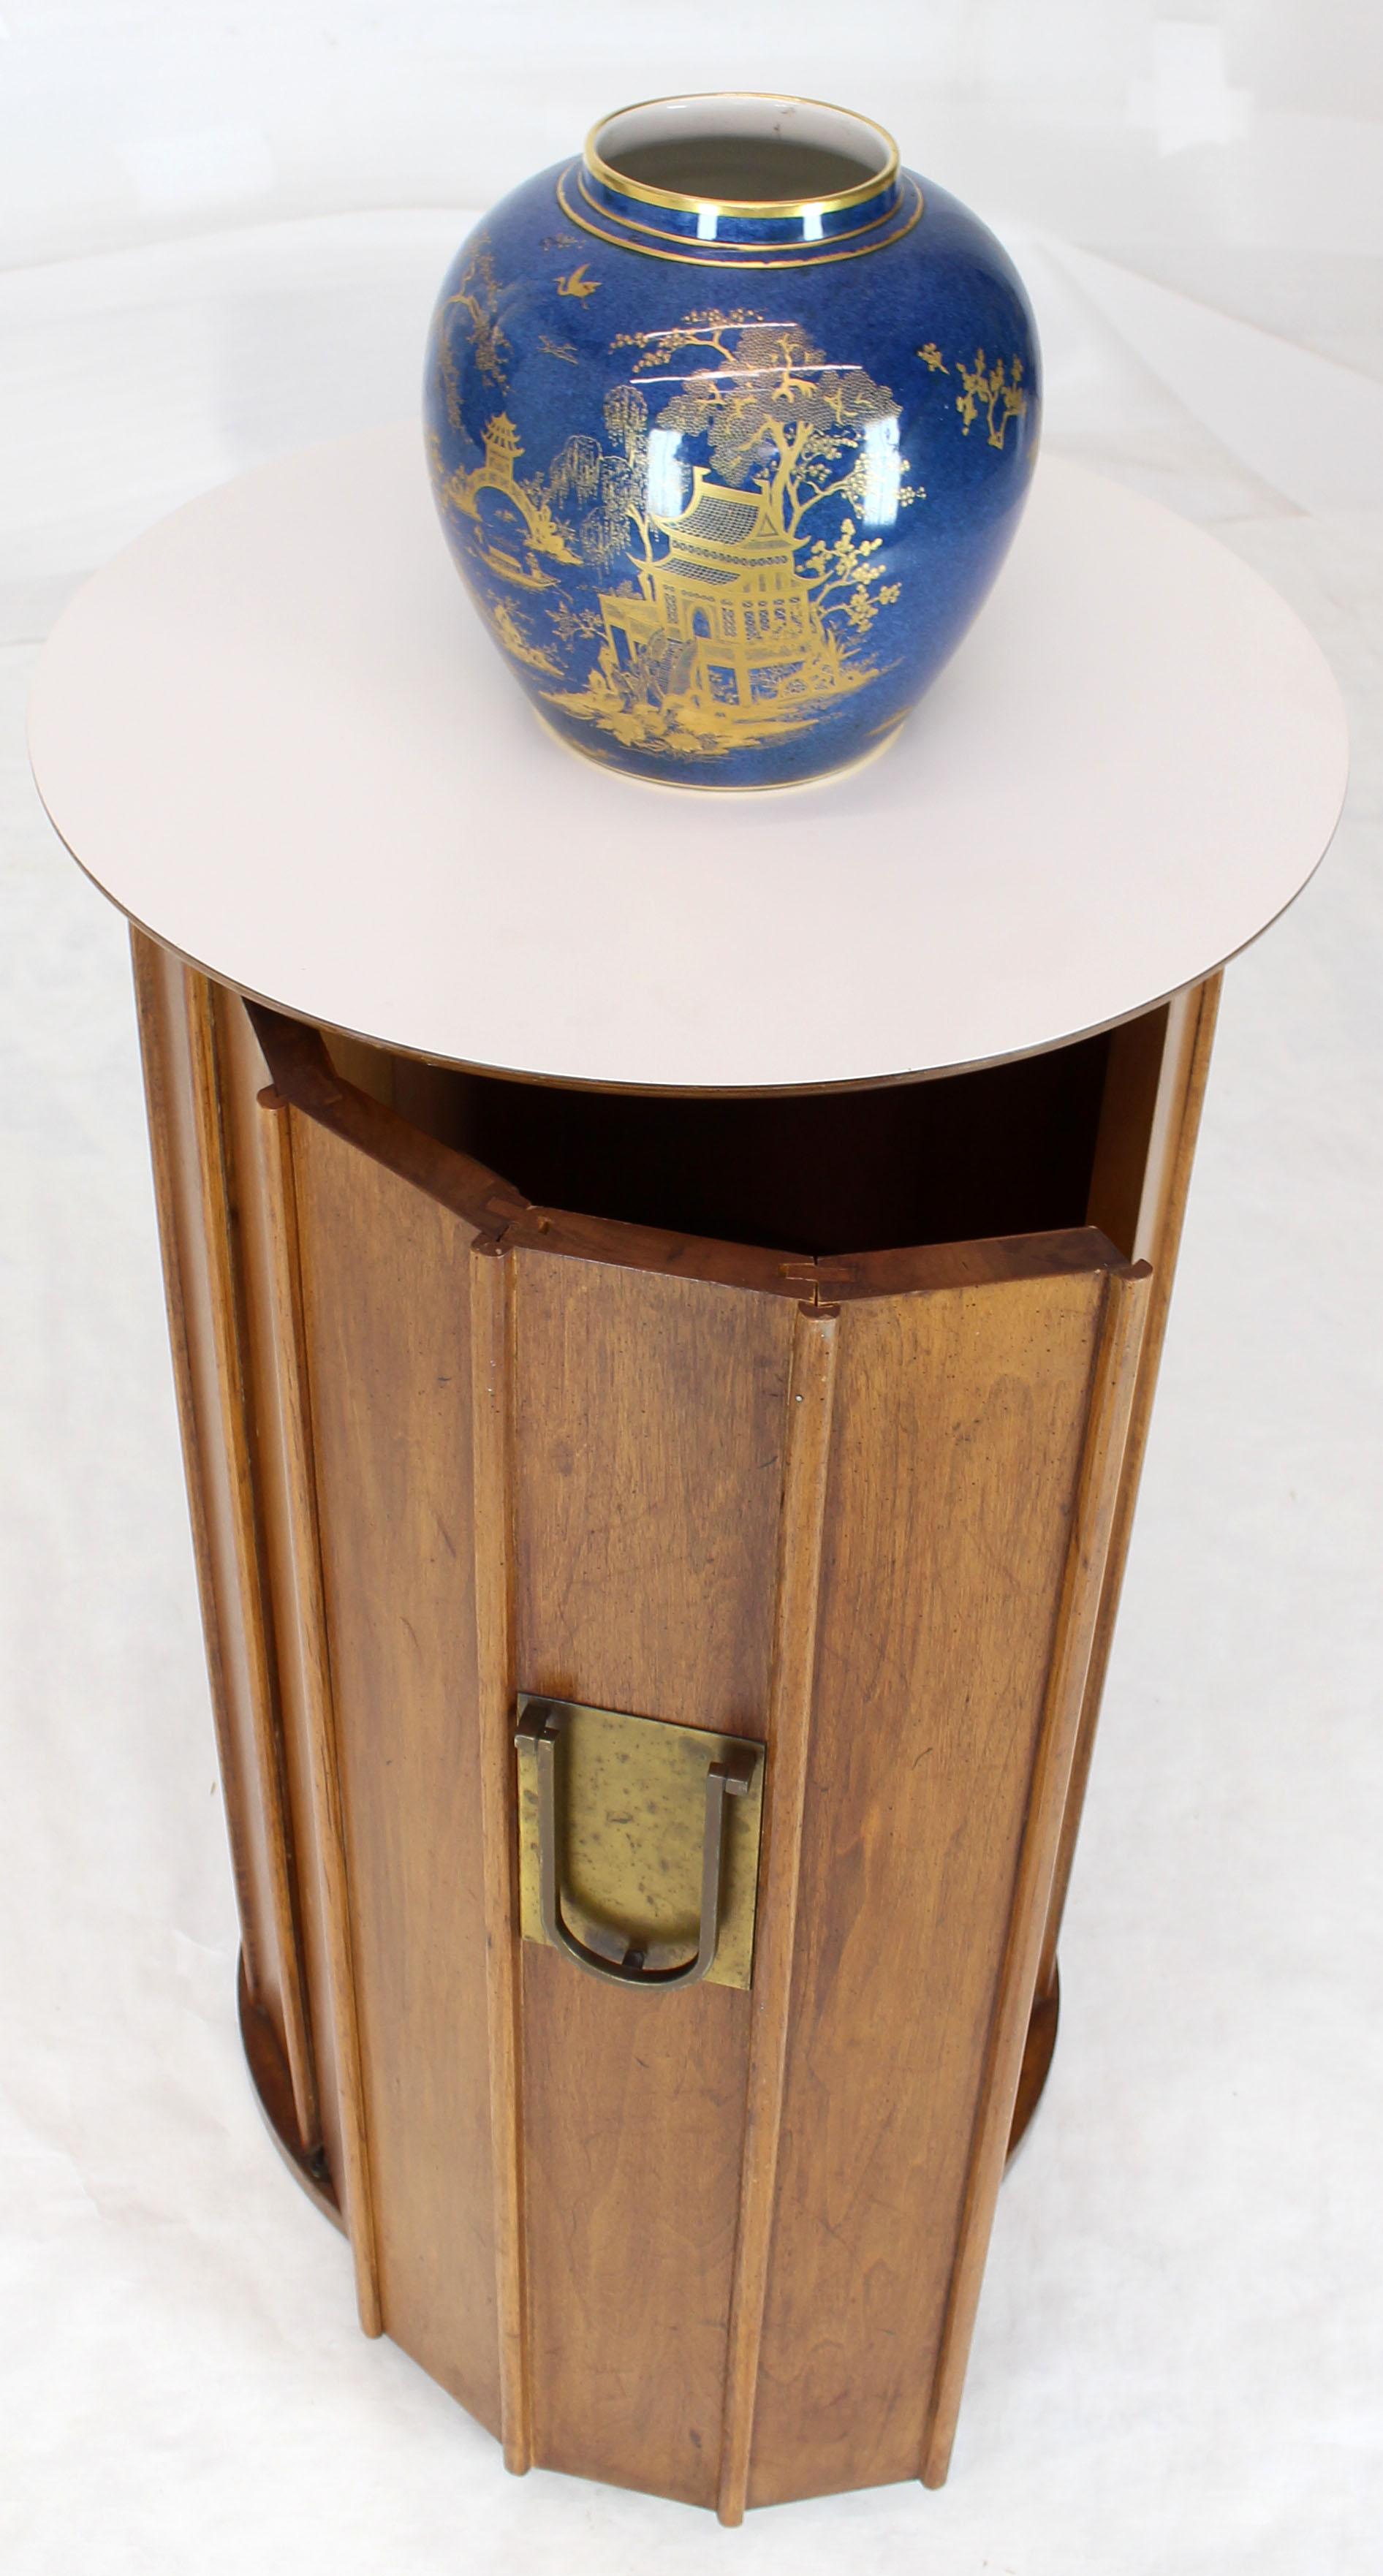 Very decorative high quality craftsmanship solid wood cylinder or pedestal shape liquor cabinet bar.